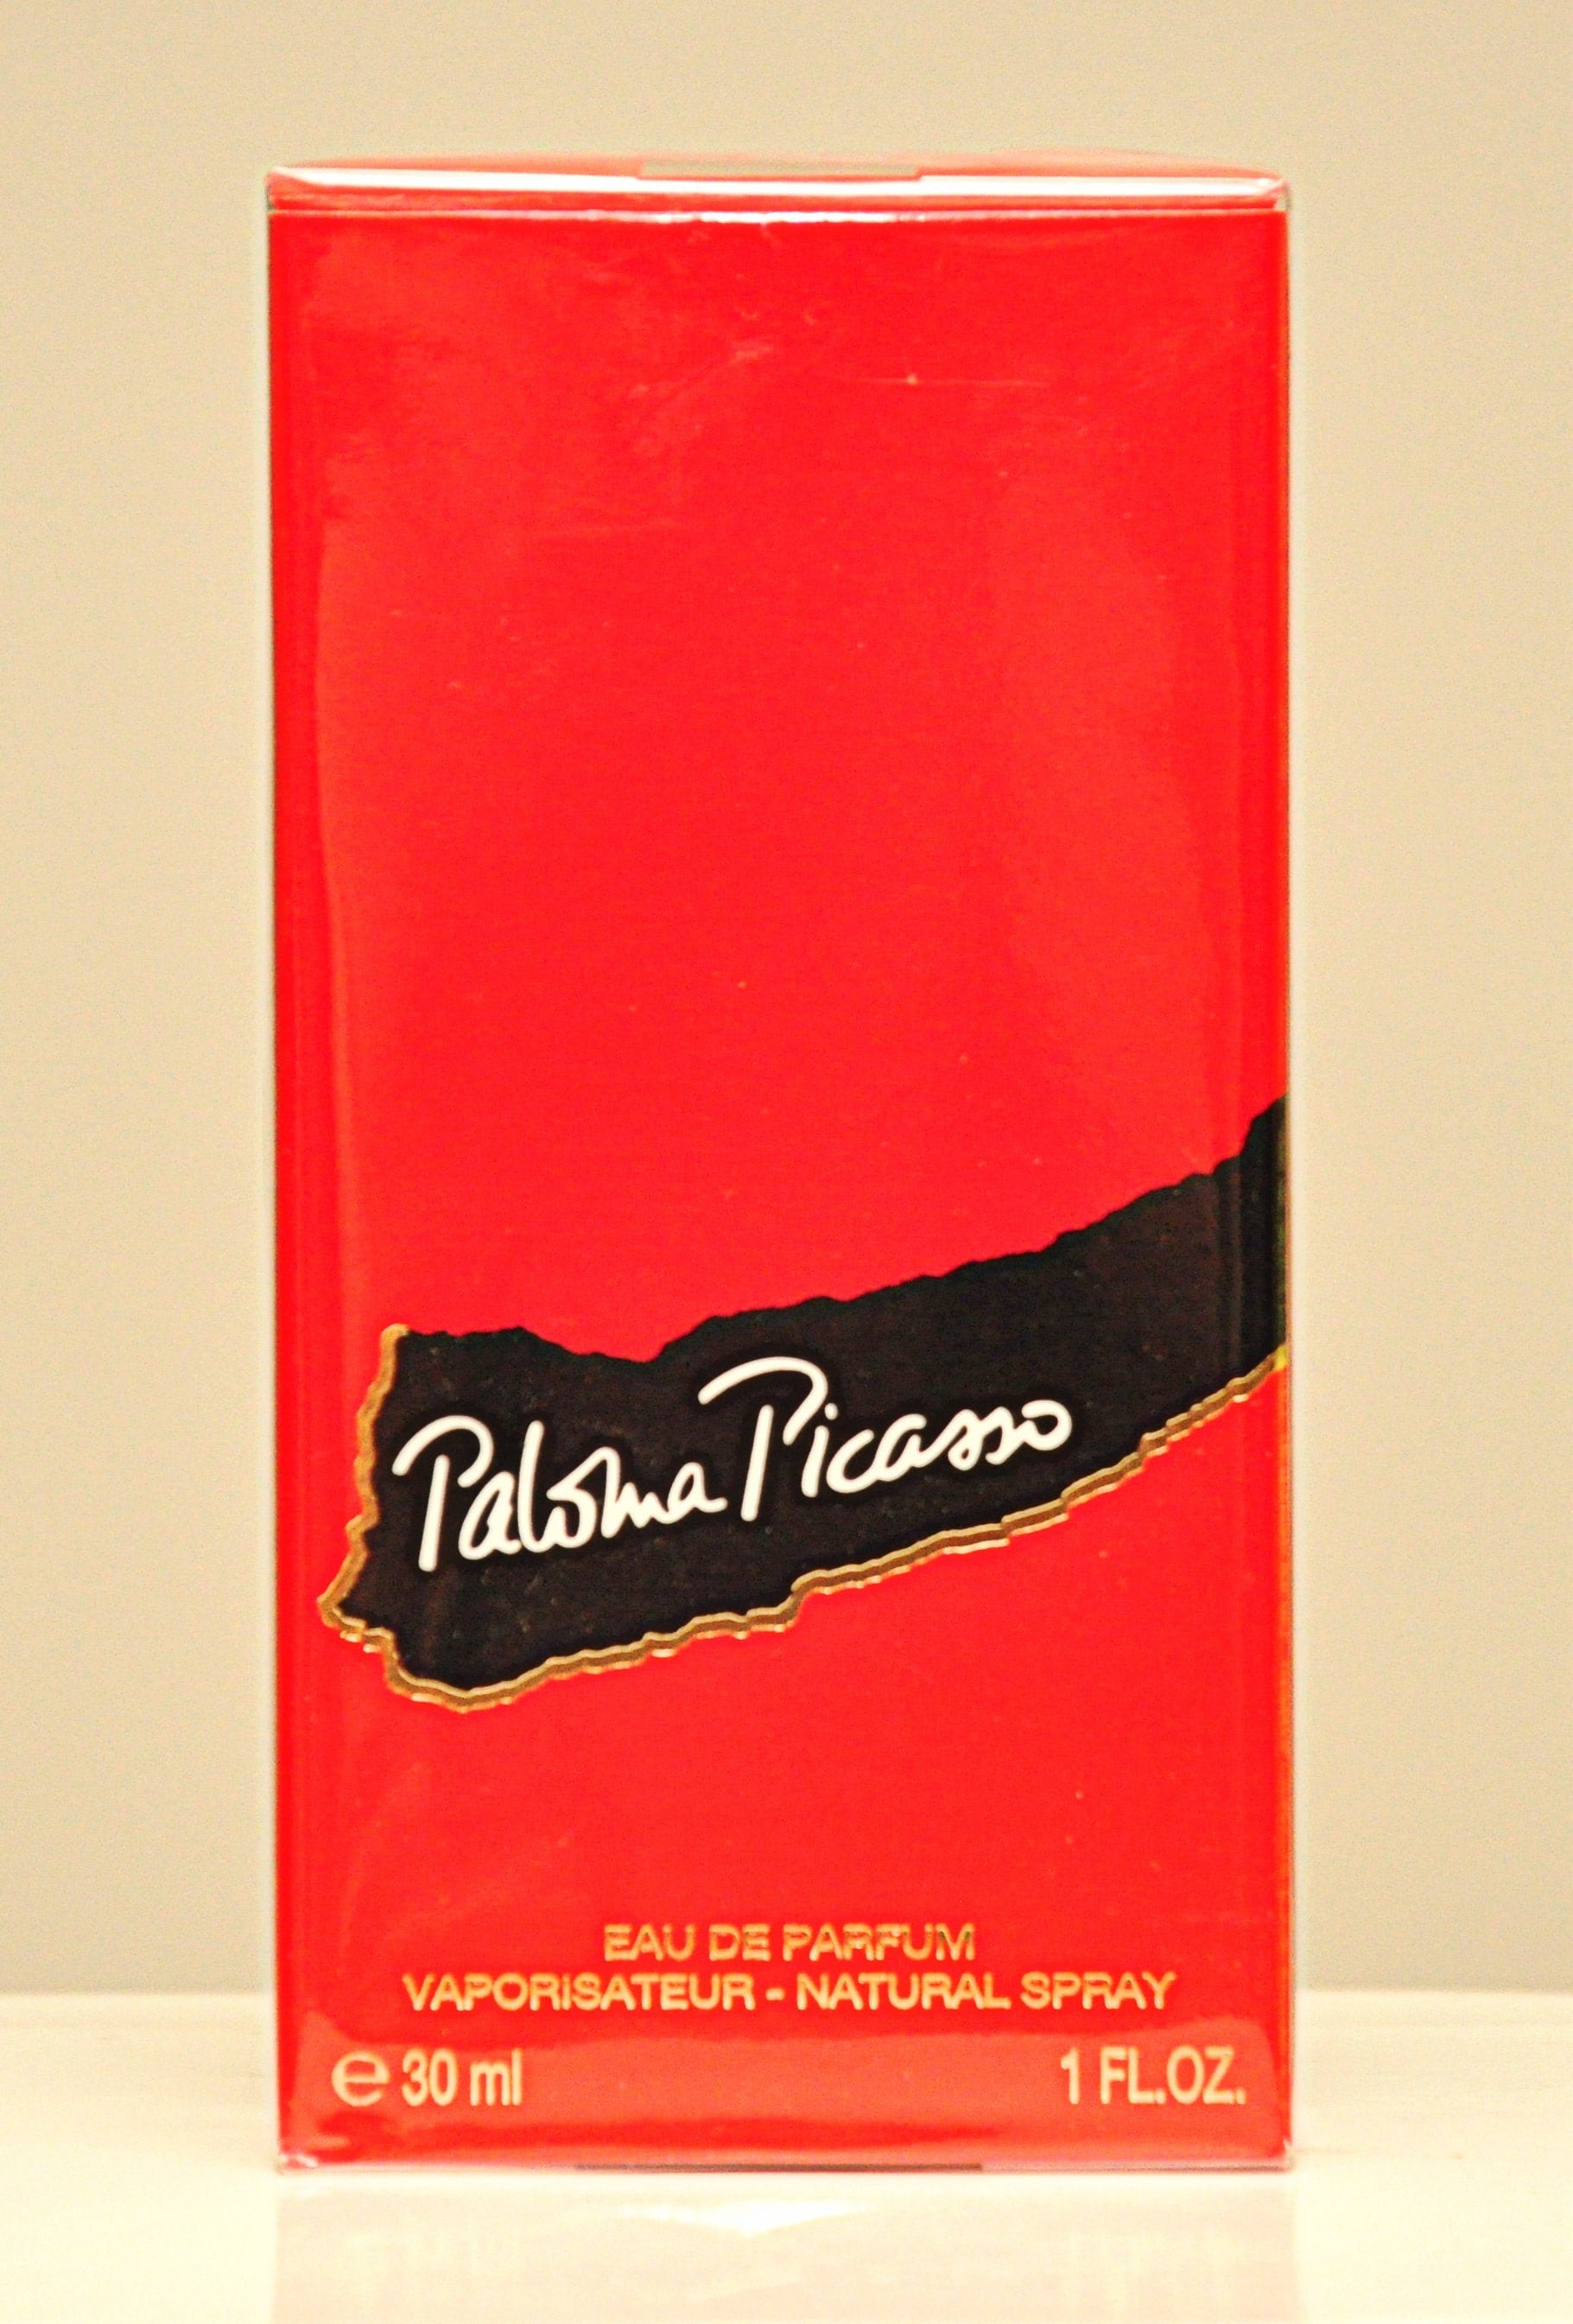 Paloma Picasso Von Eau De Parfum Edp 30 Ml Spray Parfüm Für Frauen 1984 2000Er Version Neu Versiegelt von Etsy - YourVintagePerfume